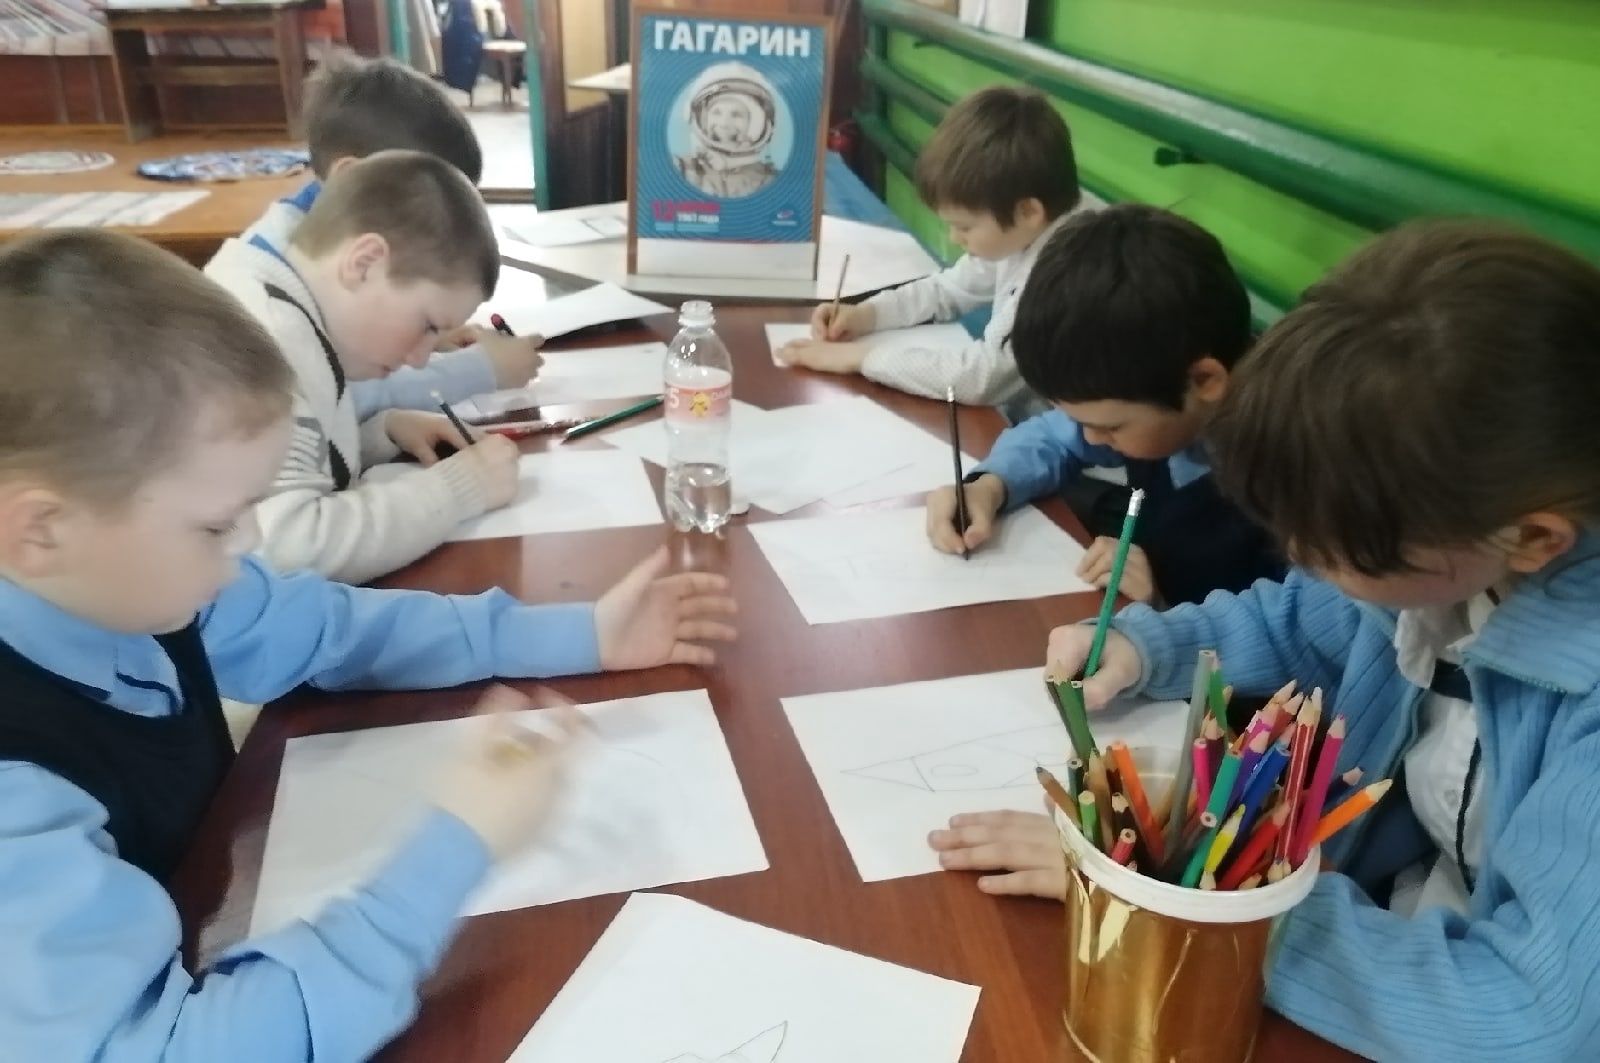 К Дню космонавтики с детьми из чистопольского села провели конкурс рисунков